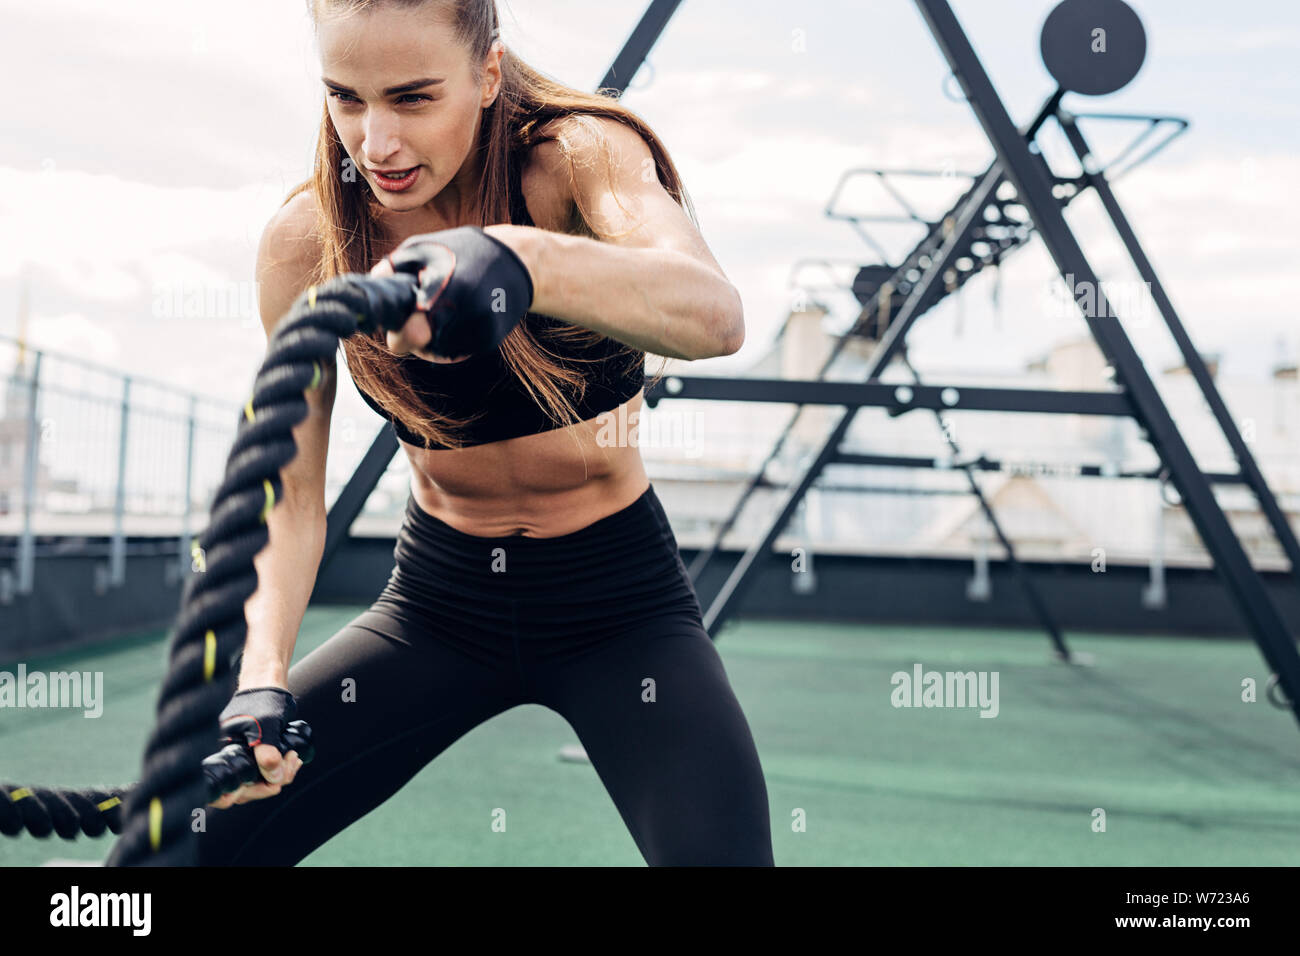 Frau tun Fitness Training mit Schlacht Seile auf im freien Fitnessraum Stockfoto